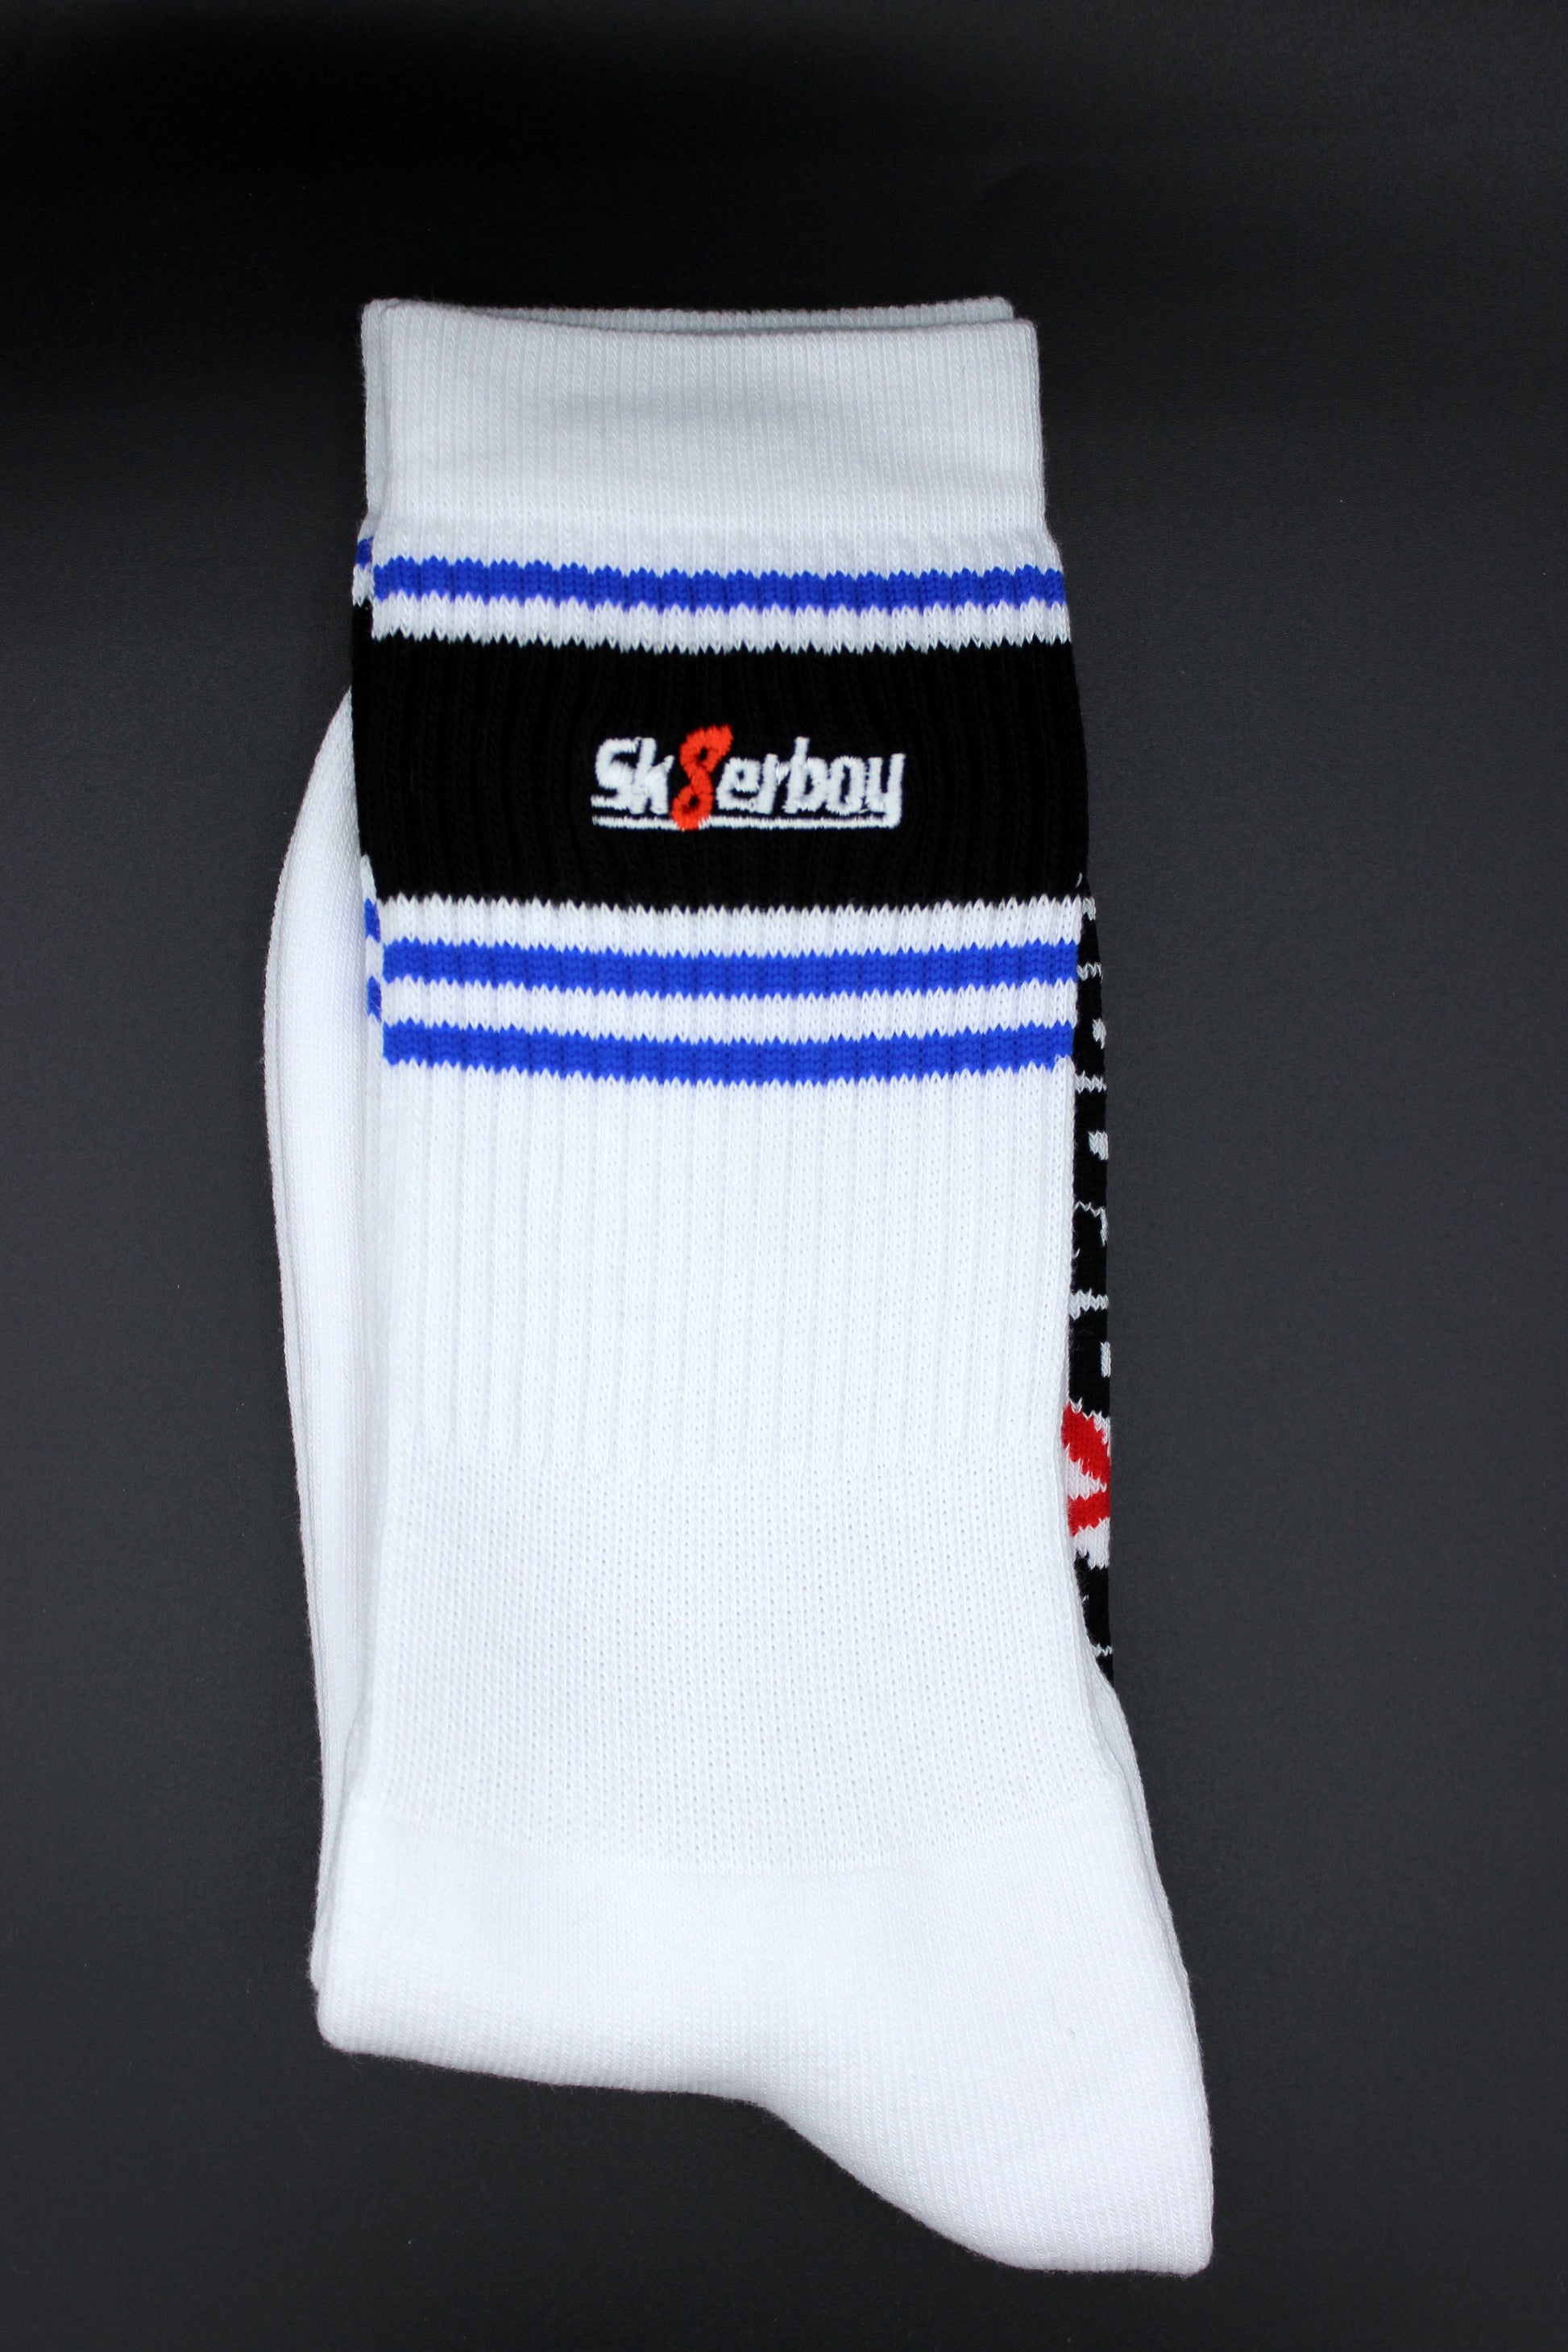 sk8erboy deluxe socks royal blau in detail ansicht mit blauem streifen am bund und hochwertigem logo in einem schwarzen balken